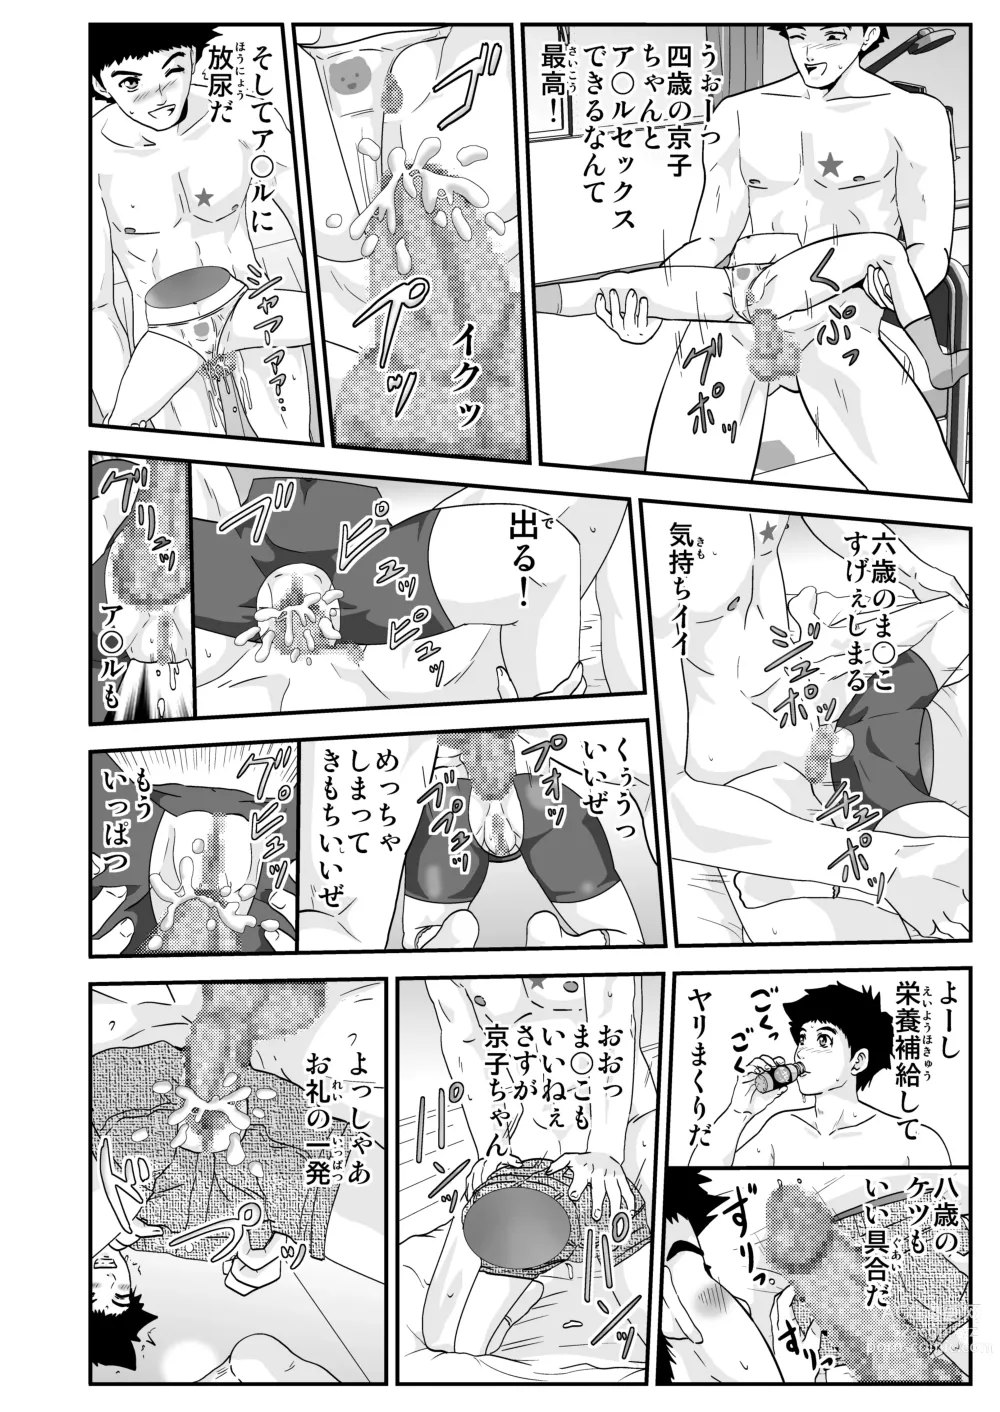 Page 16 of doujinshi Esper Kyoko